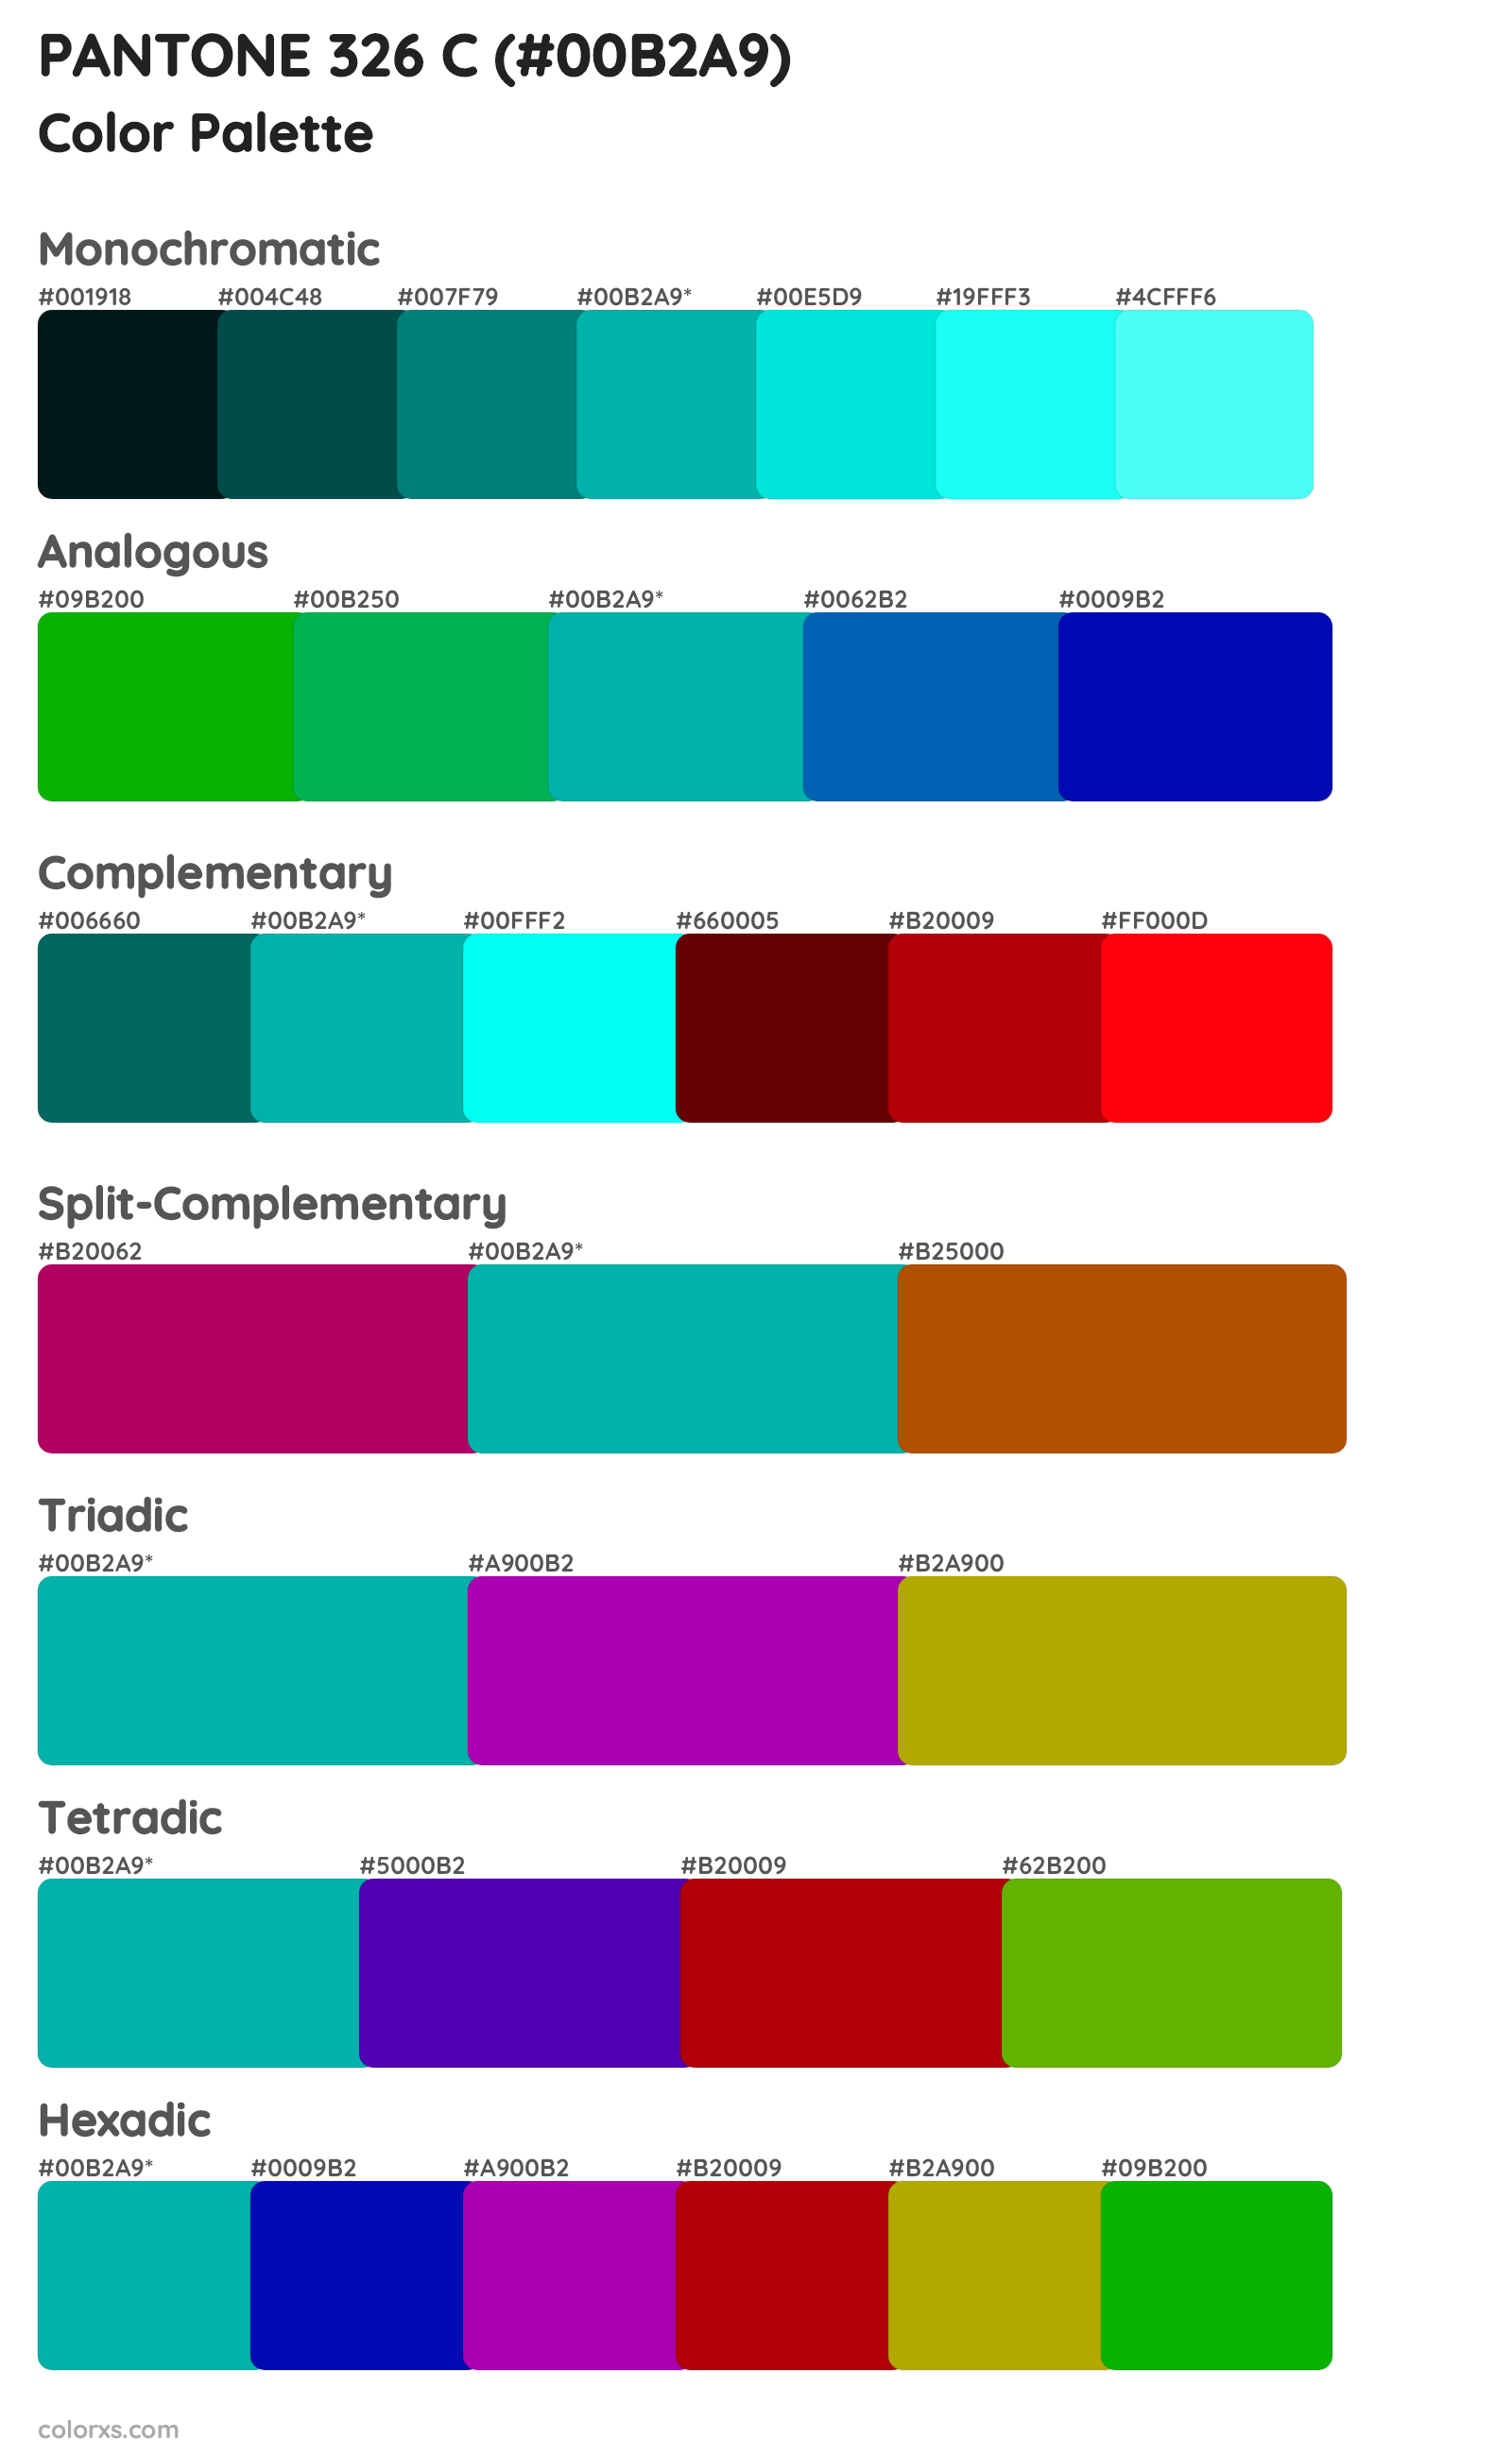 PANTONE 326 C Color Scheme Palettes